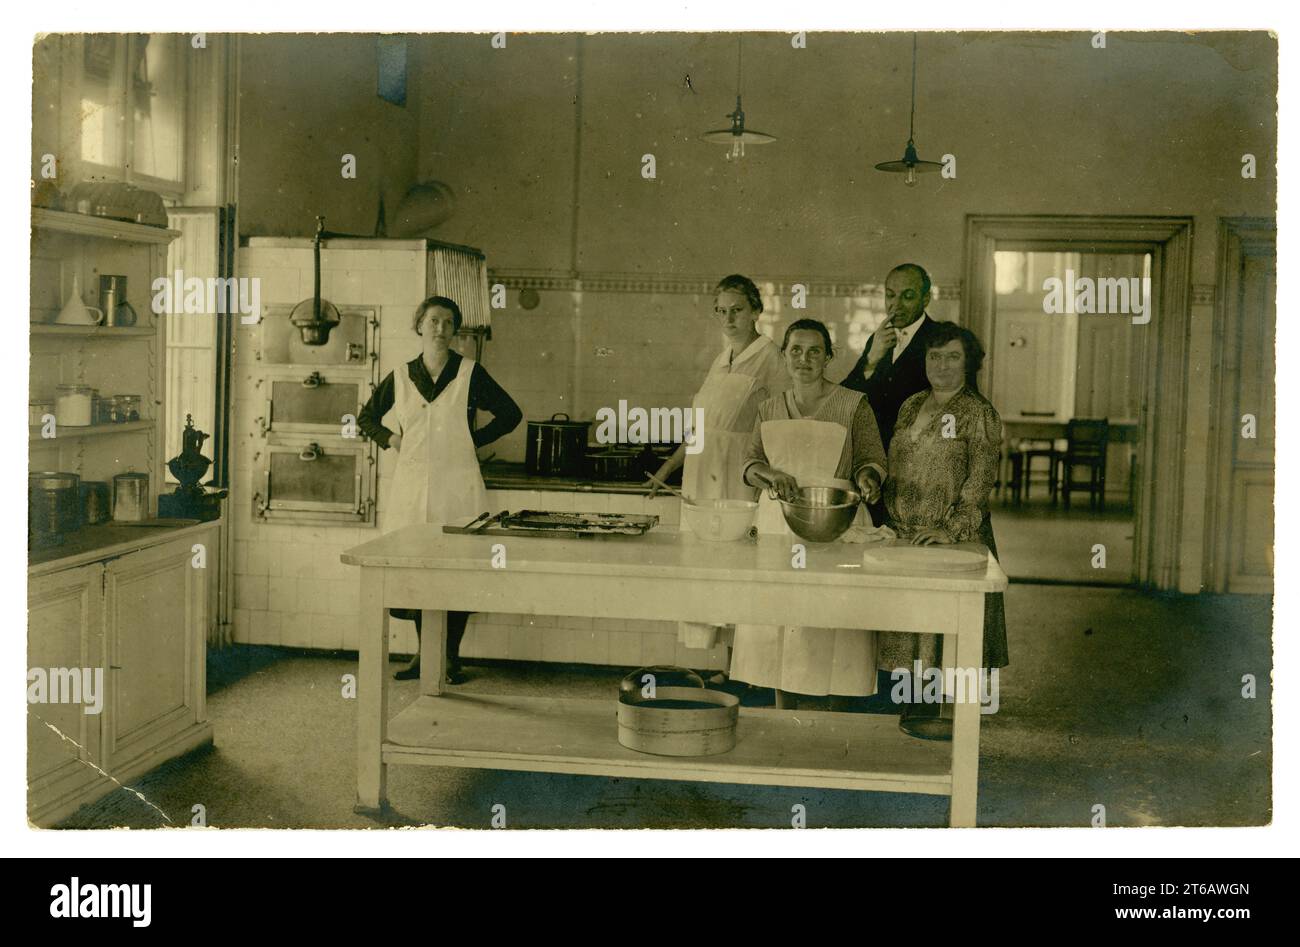 Ursprüngliche Postkarte aus den 1920er Jahren mit Köchen in einer großen Küche, Kellner, Managerin in einem Kleid mit tiefer Taille, kleines Hotel oder Institution, um 1925. GROSSBRITANNIEN Stockfoto